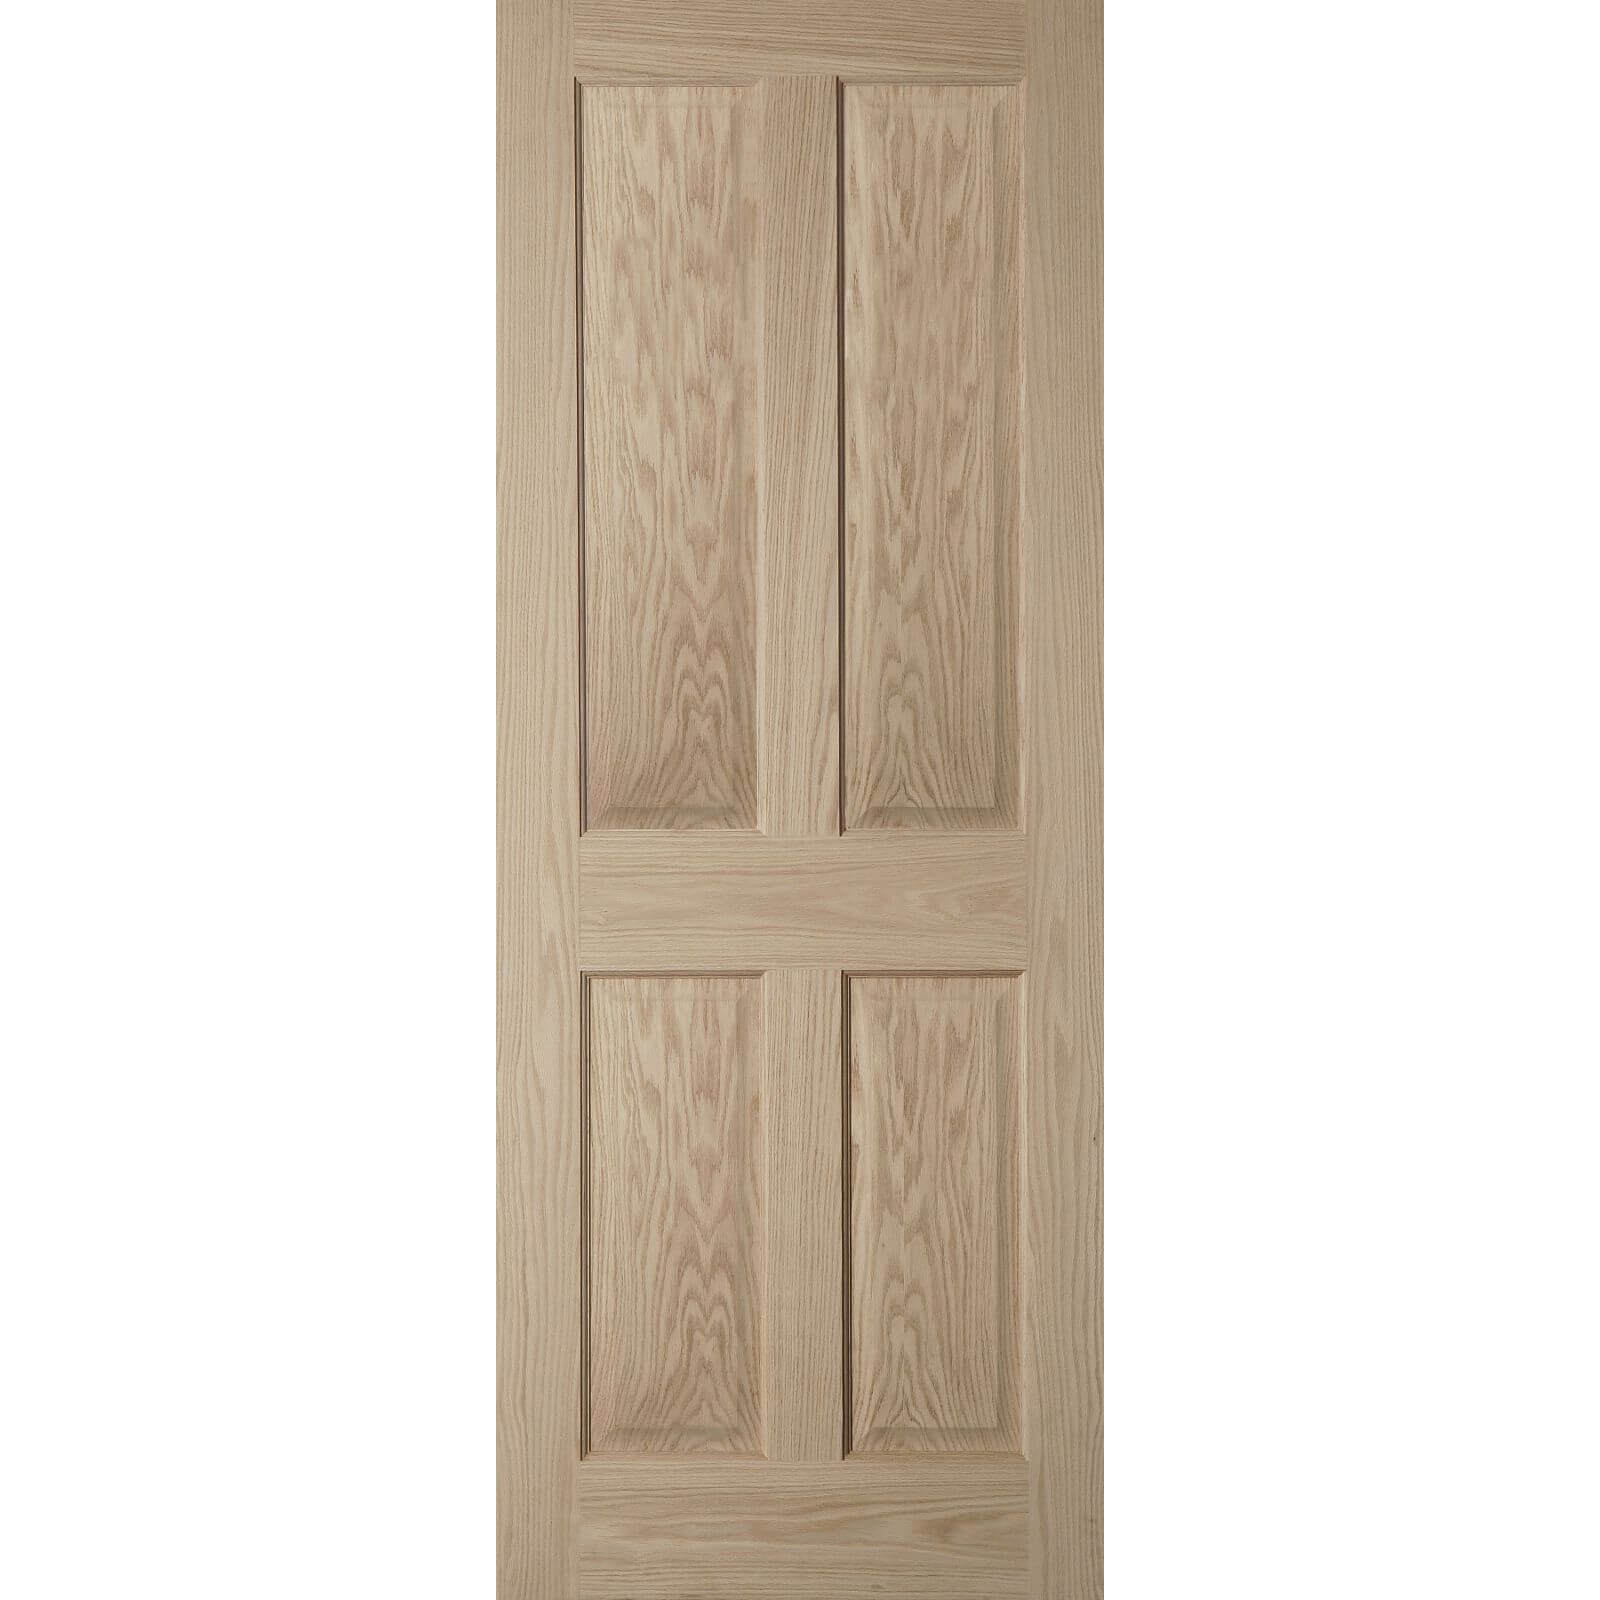 4 Panel Oak Veneer Internal Door - 813mm Wide